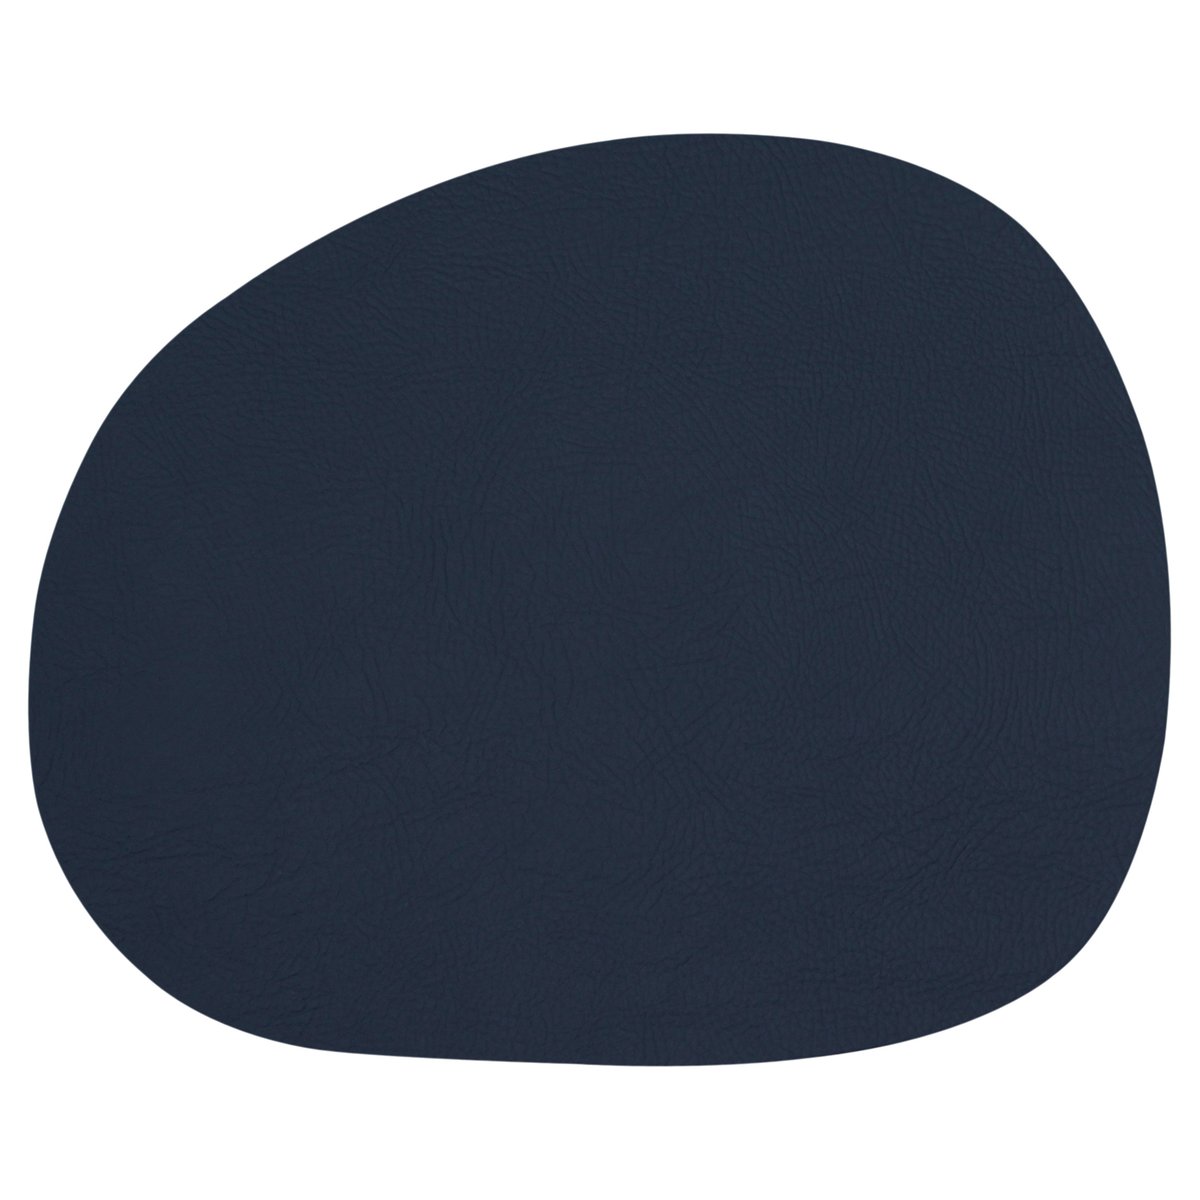 Aida Raw dækkeserviet læder Dark blue buffalo (mørkeblå)